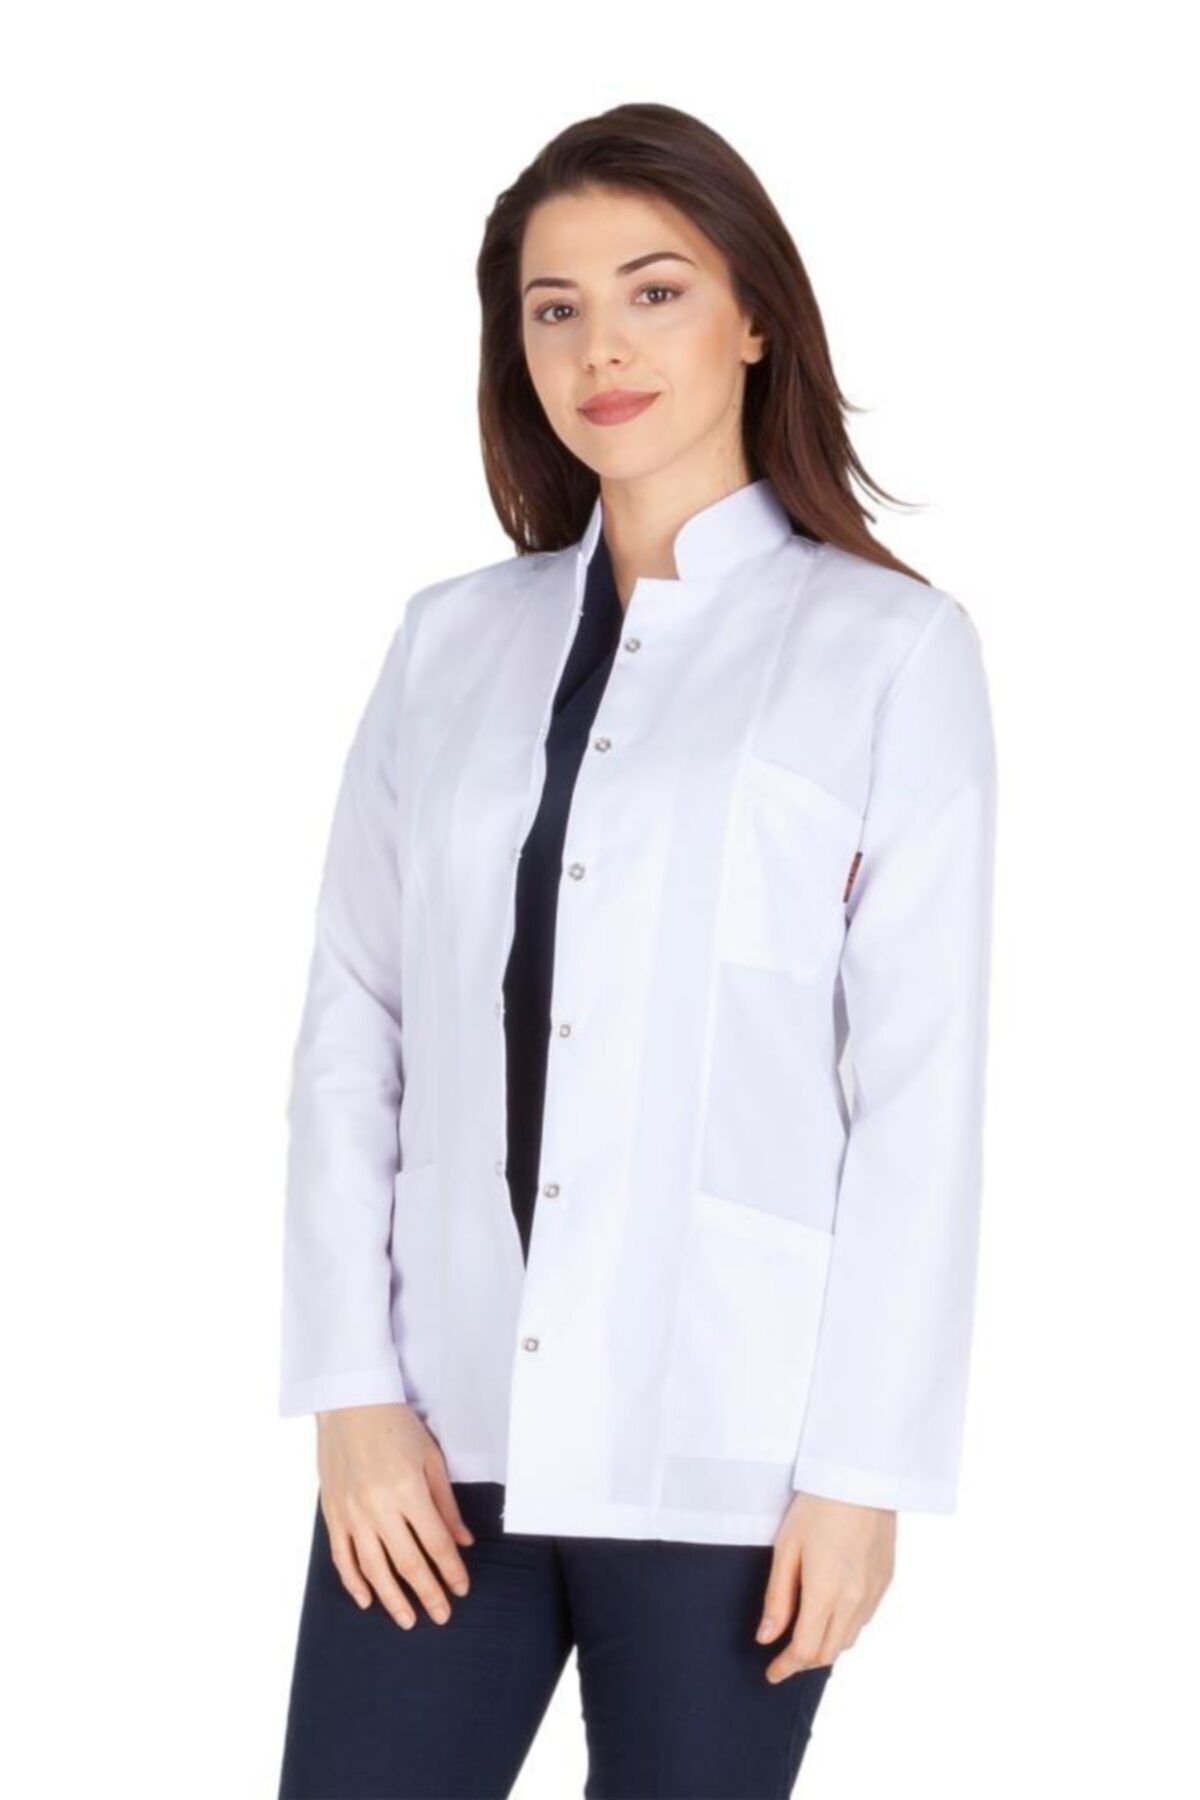 VEHBİ Kadın Doktor Öğretmen Önlüğü Laboratuvar Eczacı Hemşire Ceket Boy Kısa Önlük Hakim Yaka